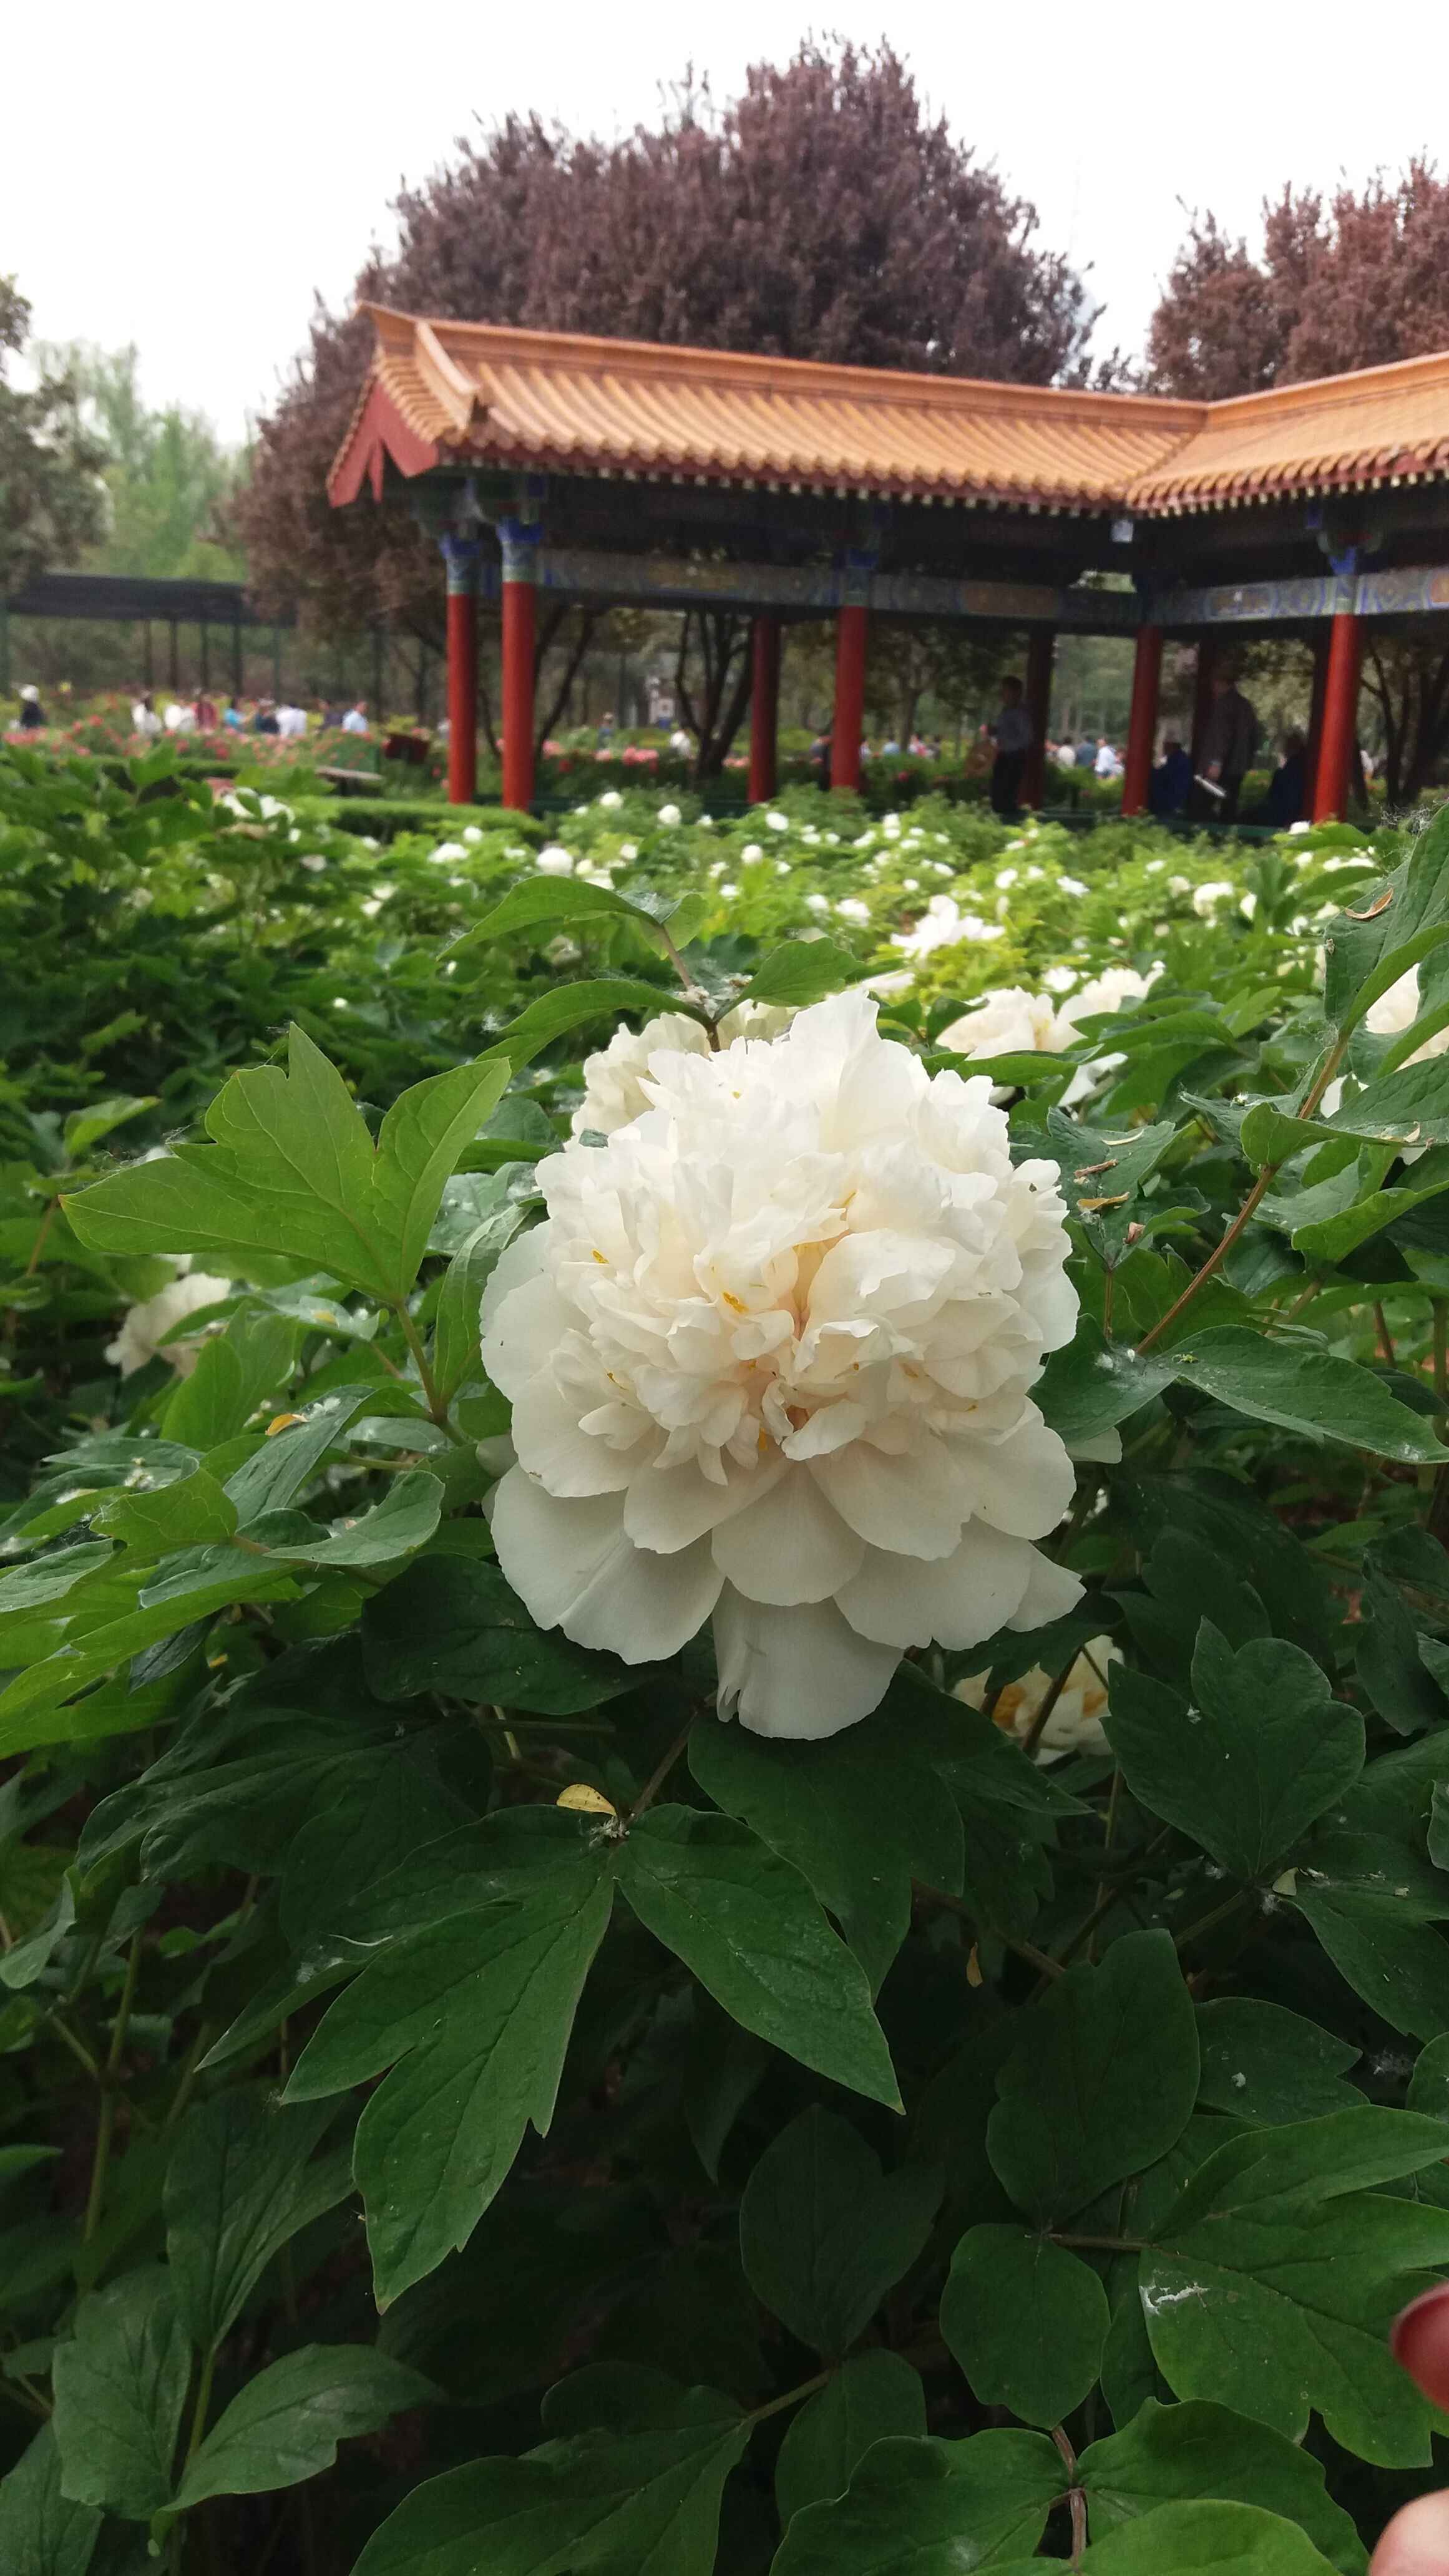 而在隋唐城遗址植物园内约有420个品种11万株牡丹,其中二乔,白雪塔